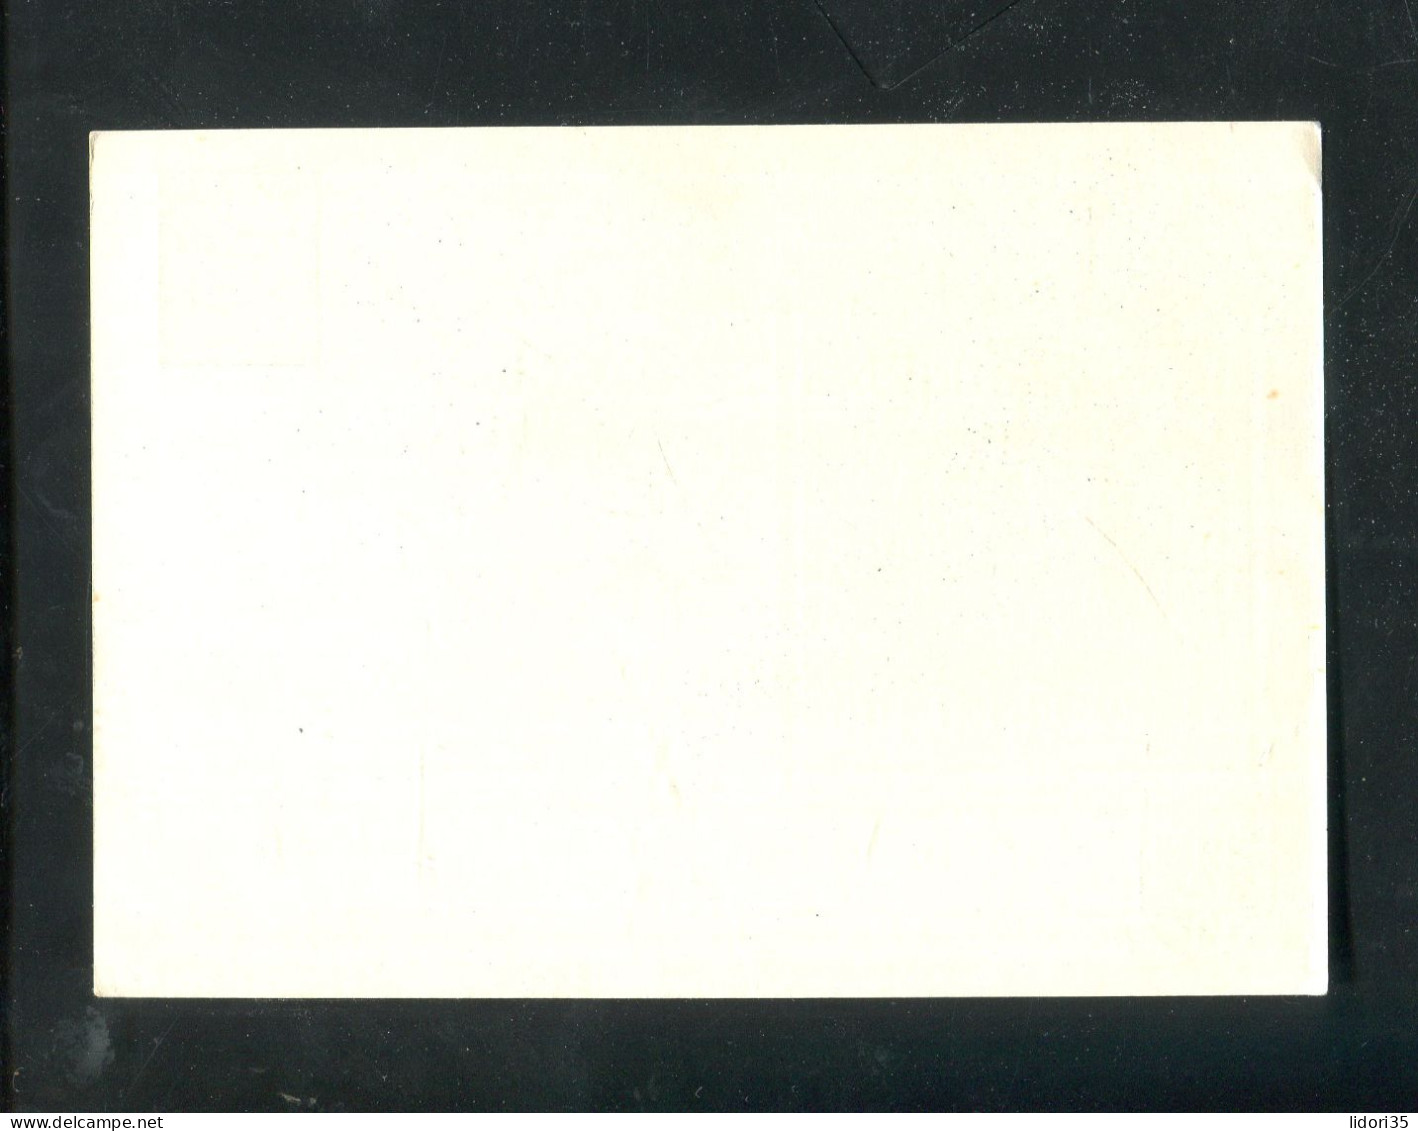 "DEUTSCHES REICH" 1939, Privat-Postkarte "45. Deutscher Philatelistentag Muenchen" ** (70139) - Interi Postali Privati